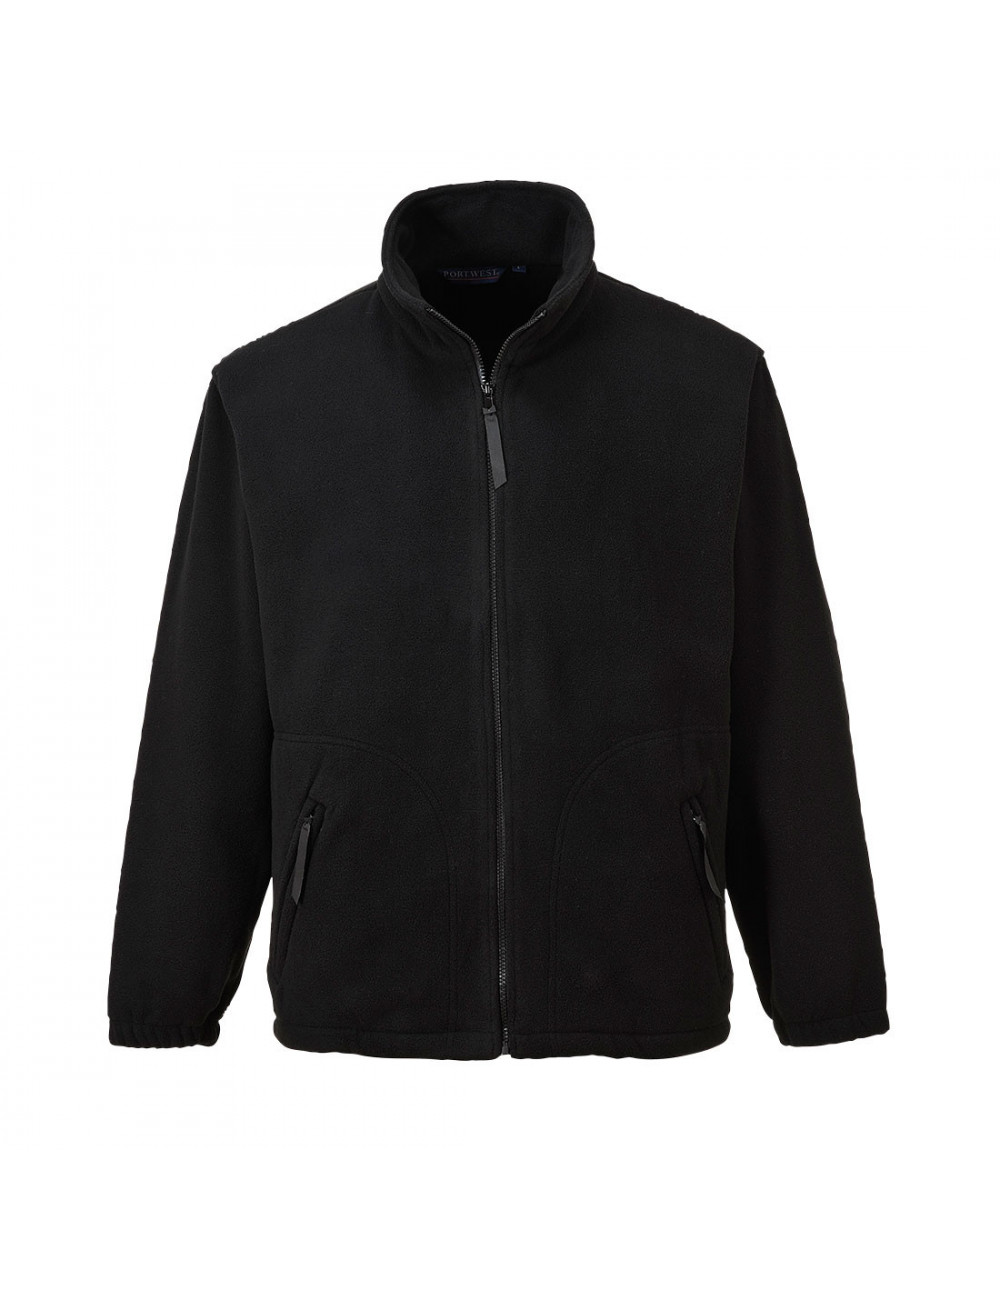 Argyll fleece jacket black Portwest